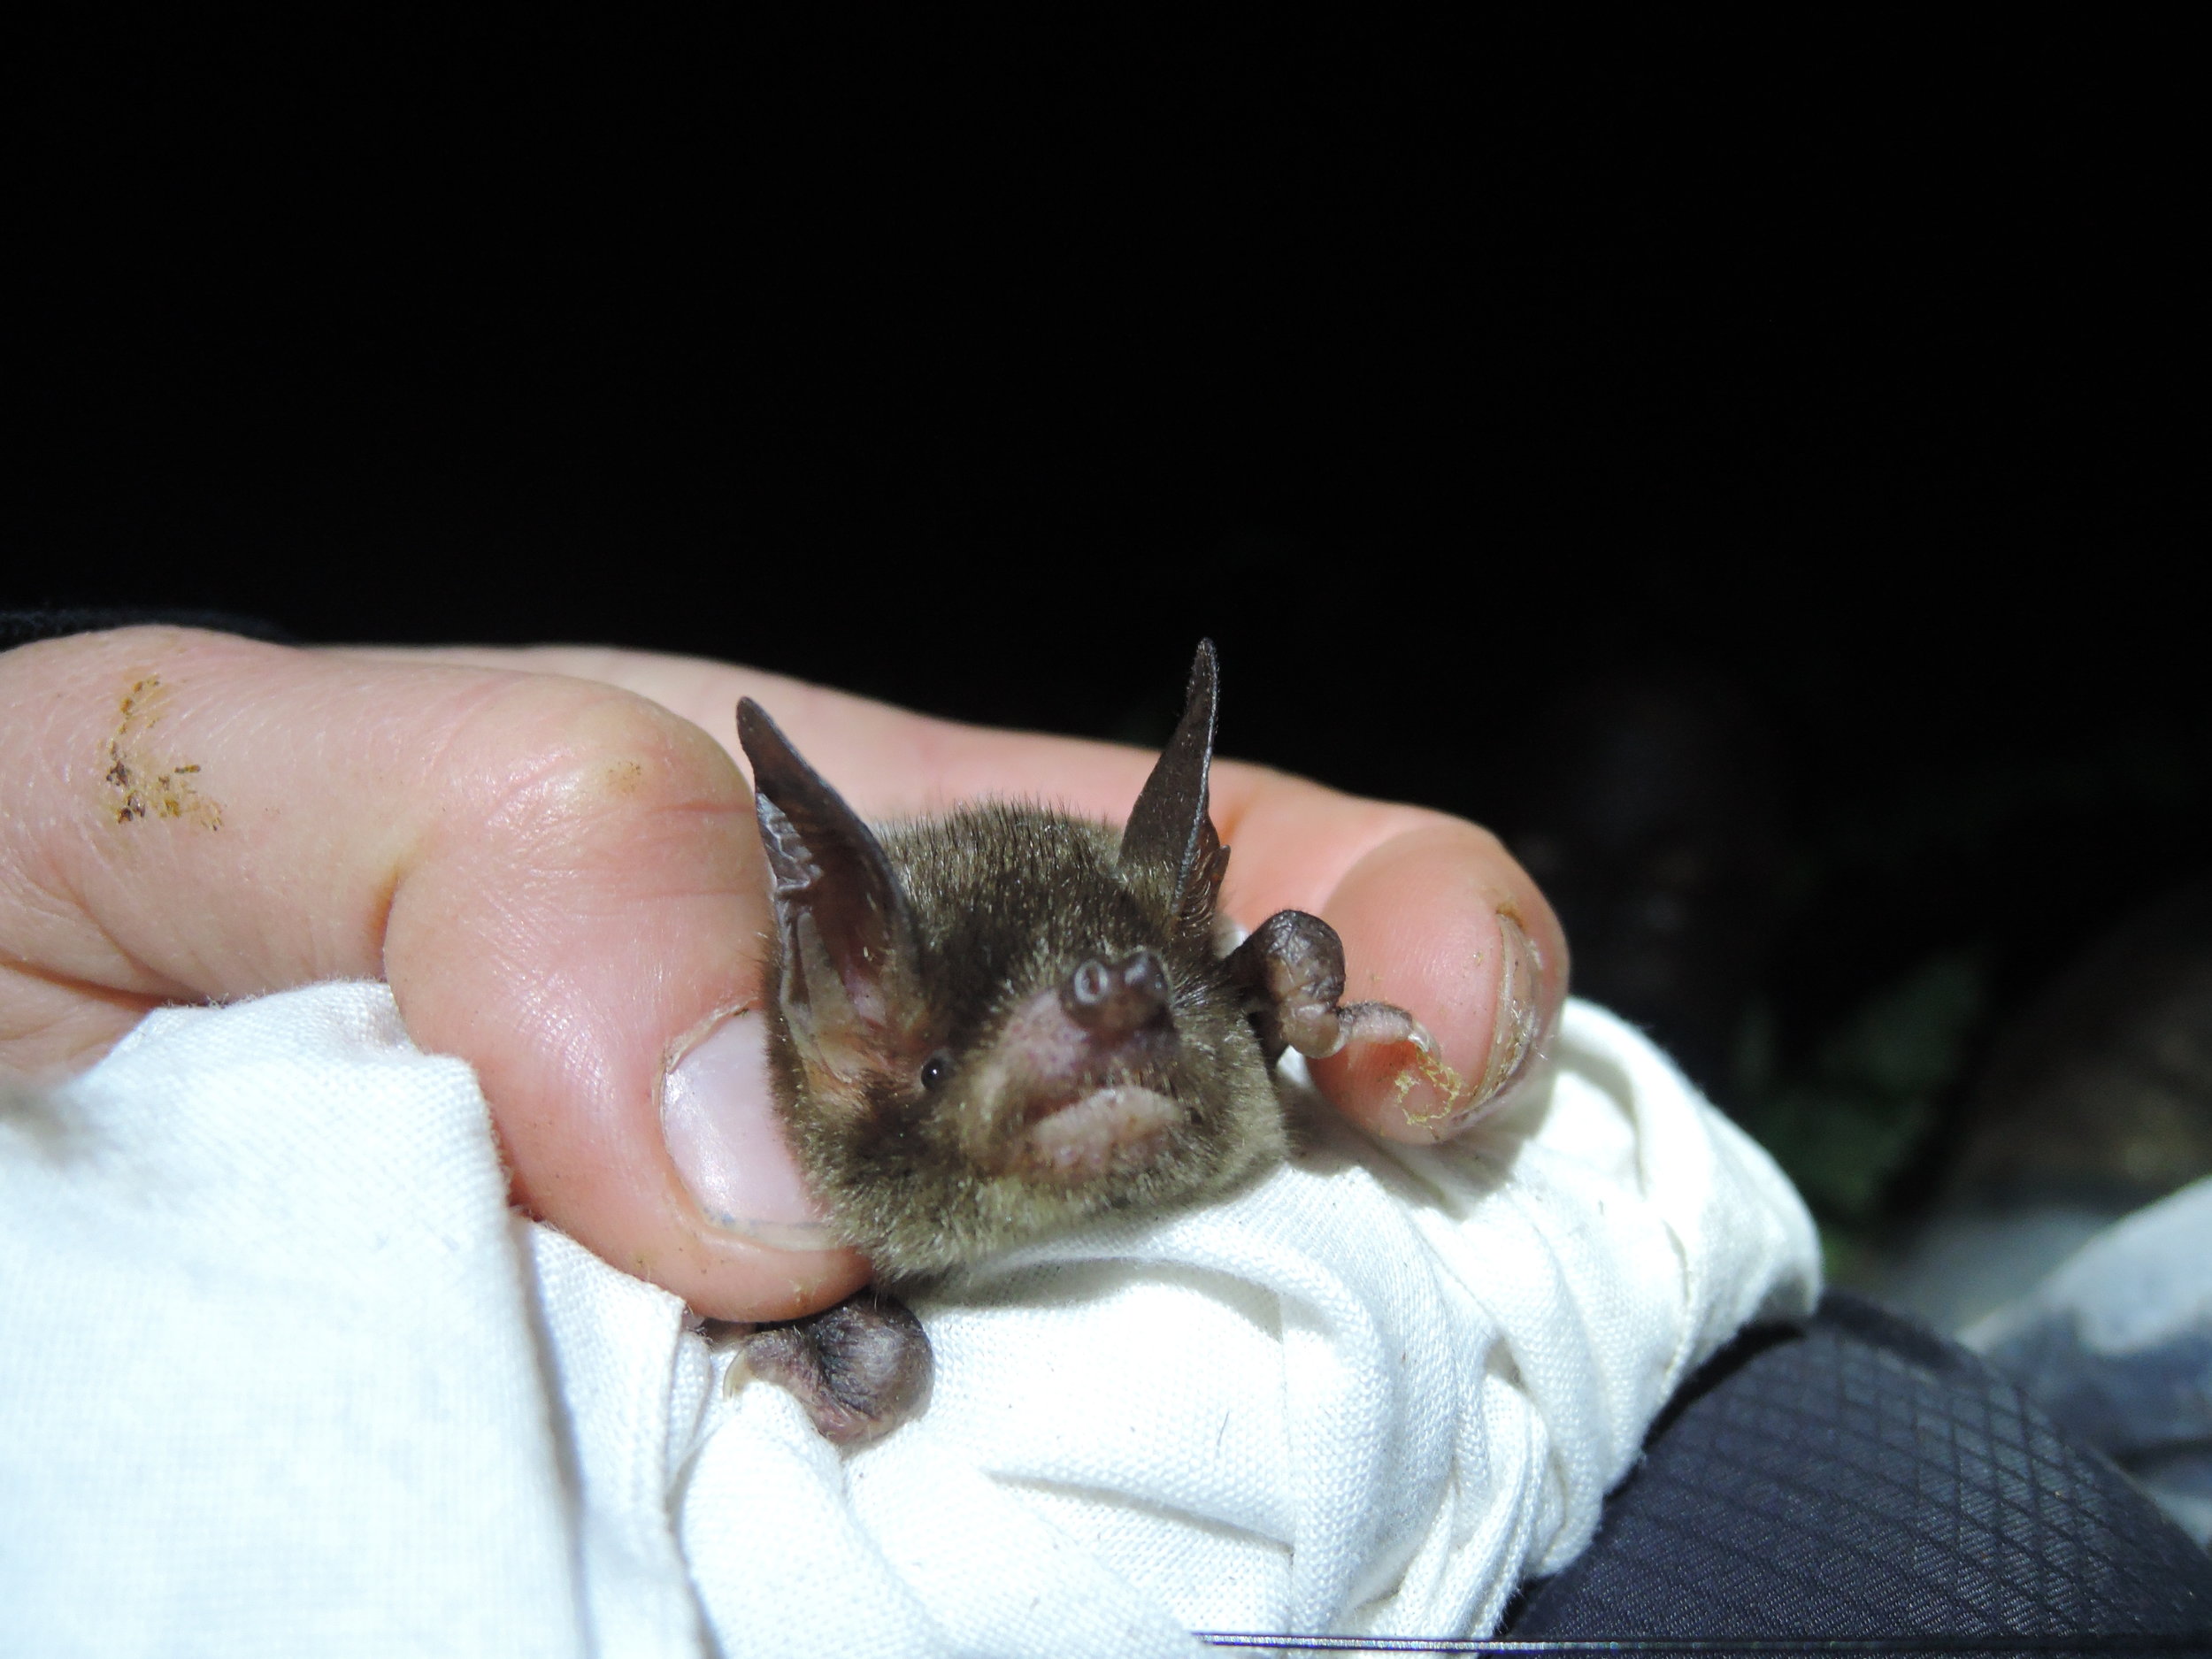  A New Zealand lesser short-tailed bat. © Kathleen Collier. 